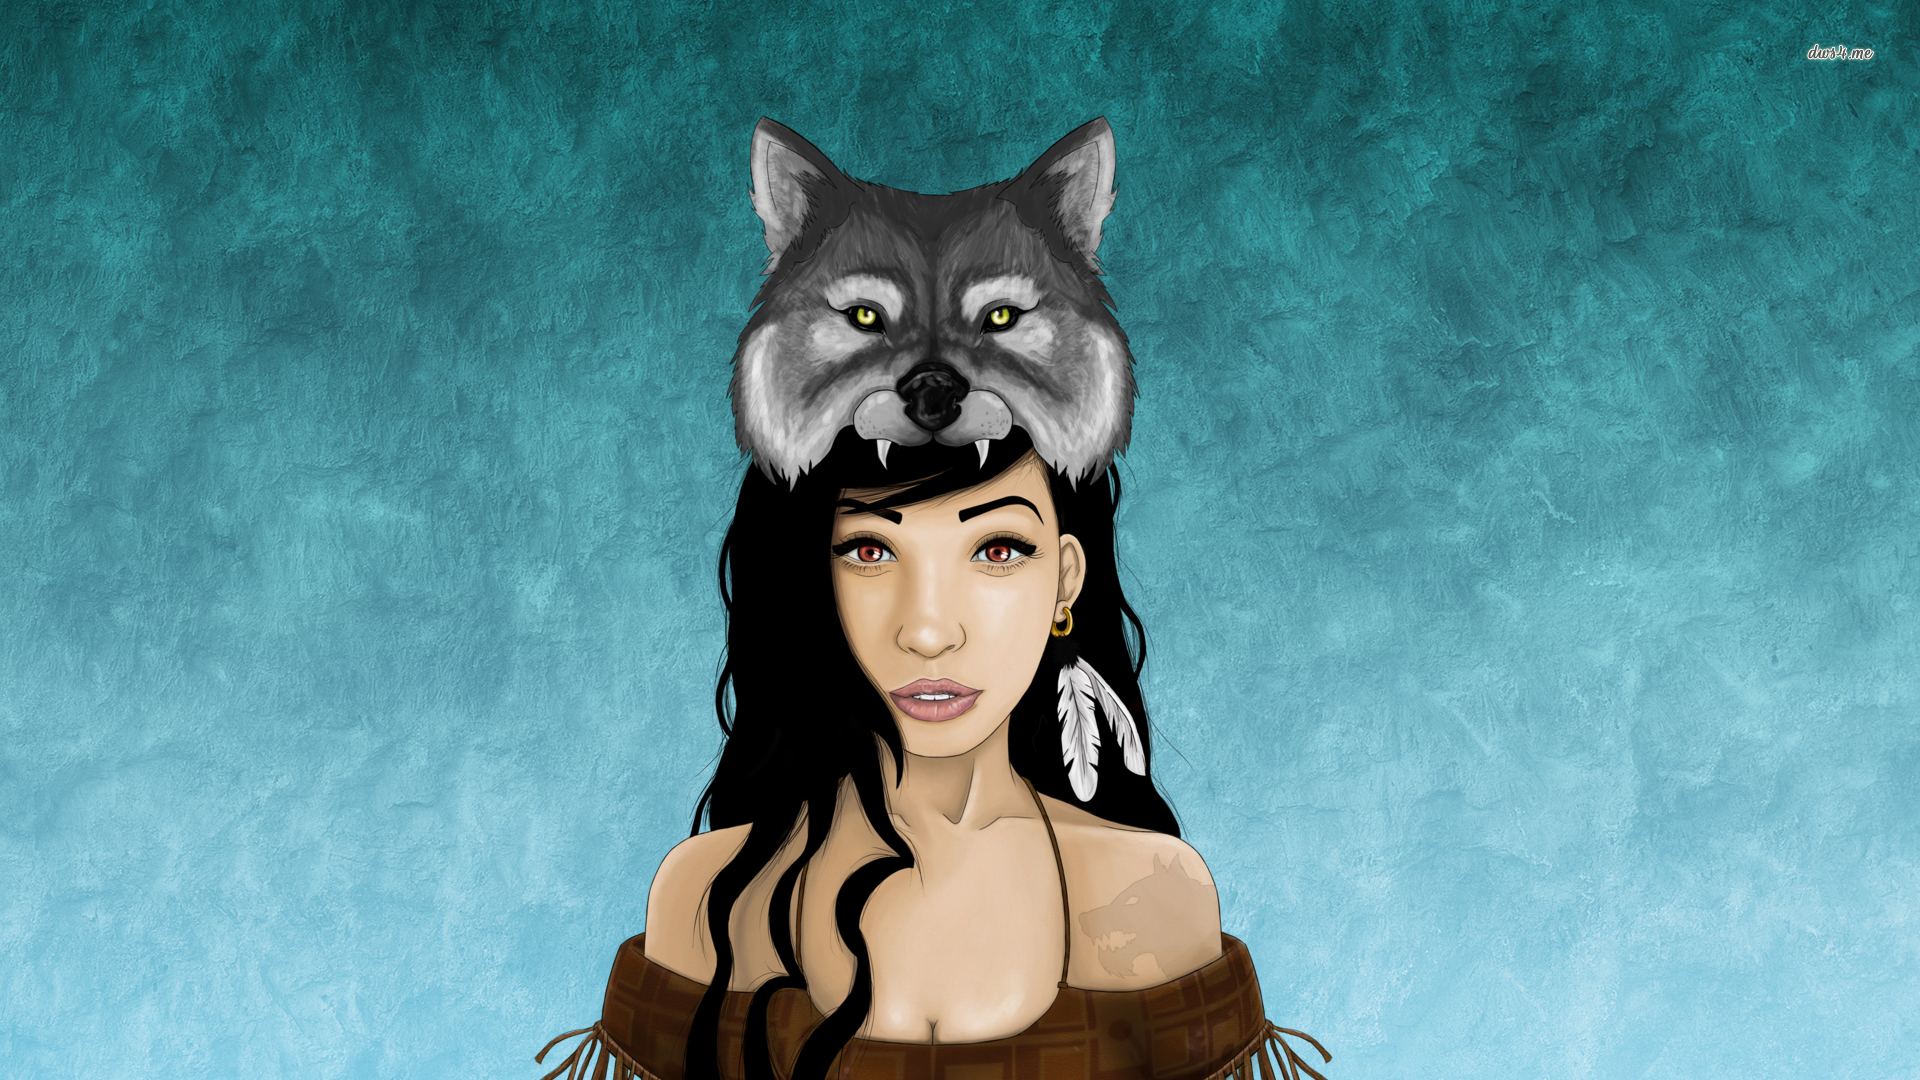 Wolf girl wallpaper wallpaper